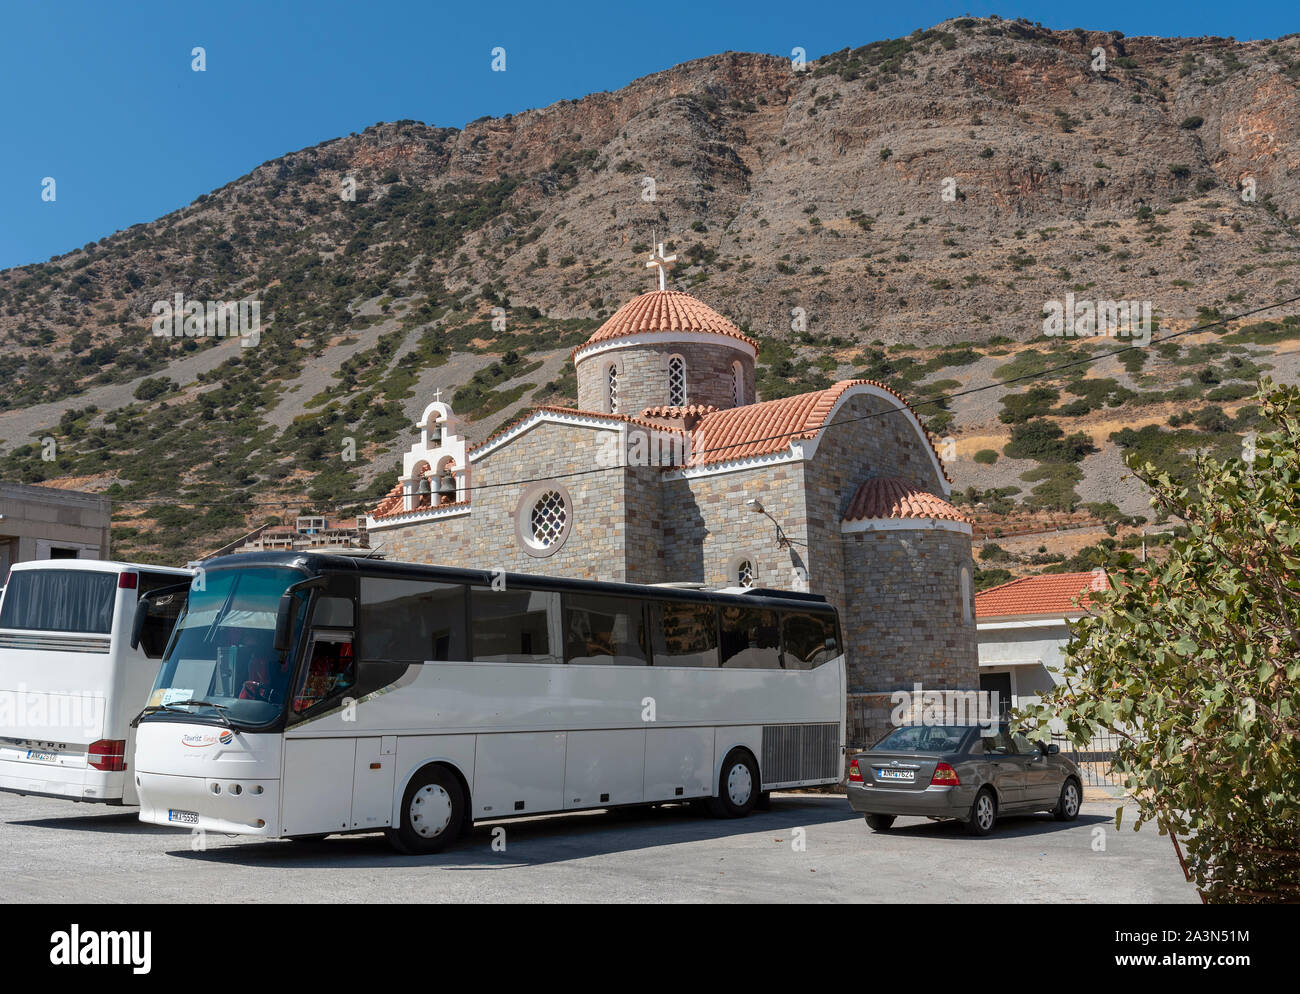 Plaka, Kreta, Griechenland. Oktober 2019. Busse für Touristen außerhalb eines großen modernen Kirche in Plaka, Kreta, Griechenland warten Stockfoto